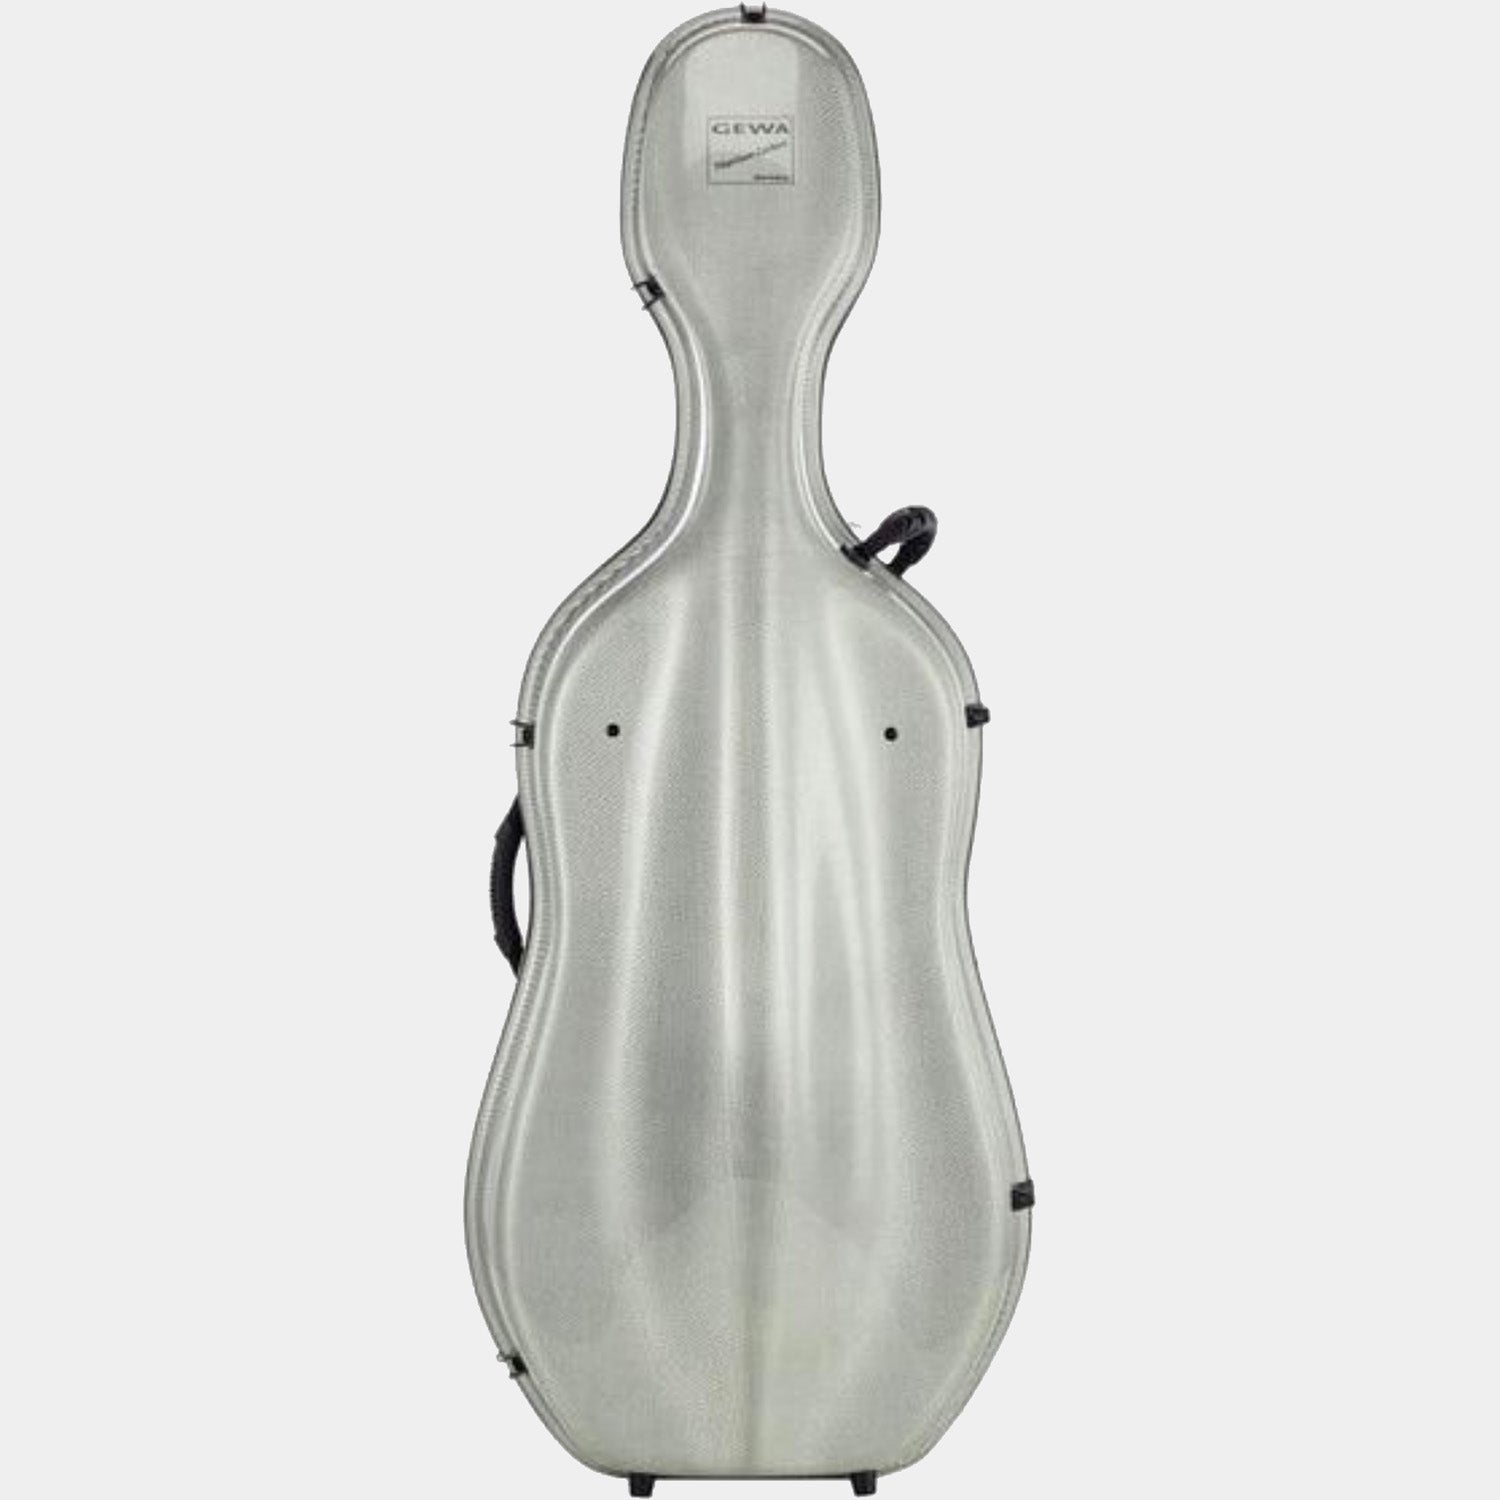 Idea Titanium Carbon 3.3 cello case